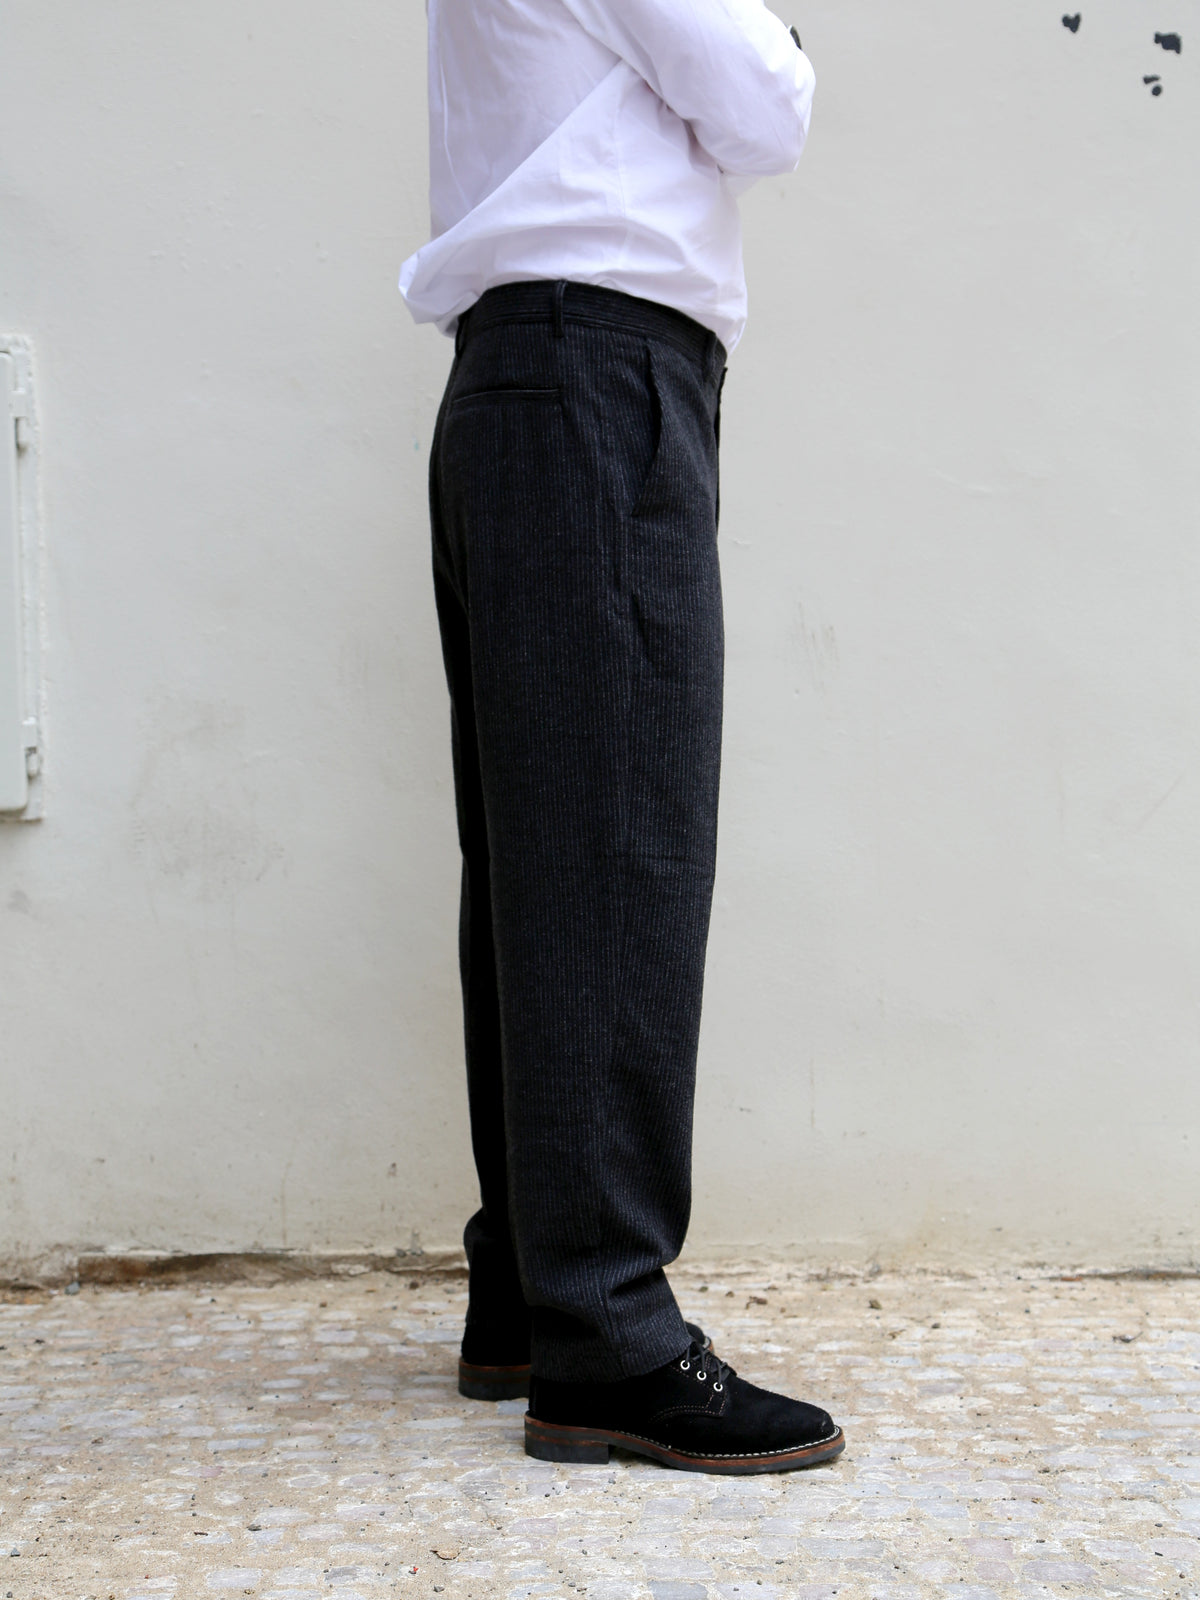 Hansen Garments 26-44-2 Ken Wide Cut Trousers - Black Wool Pin